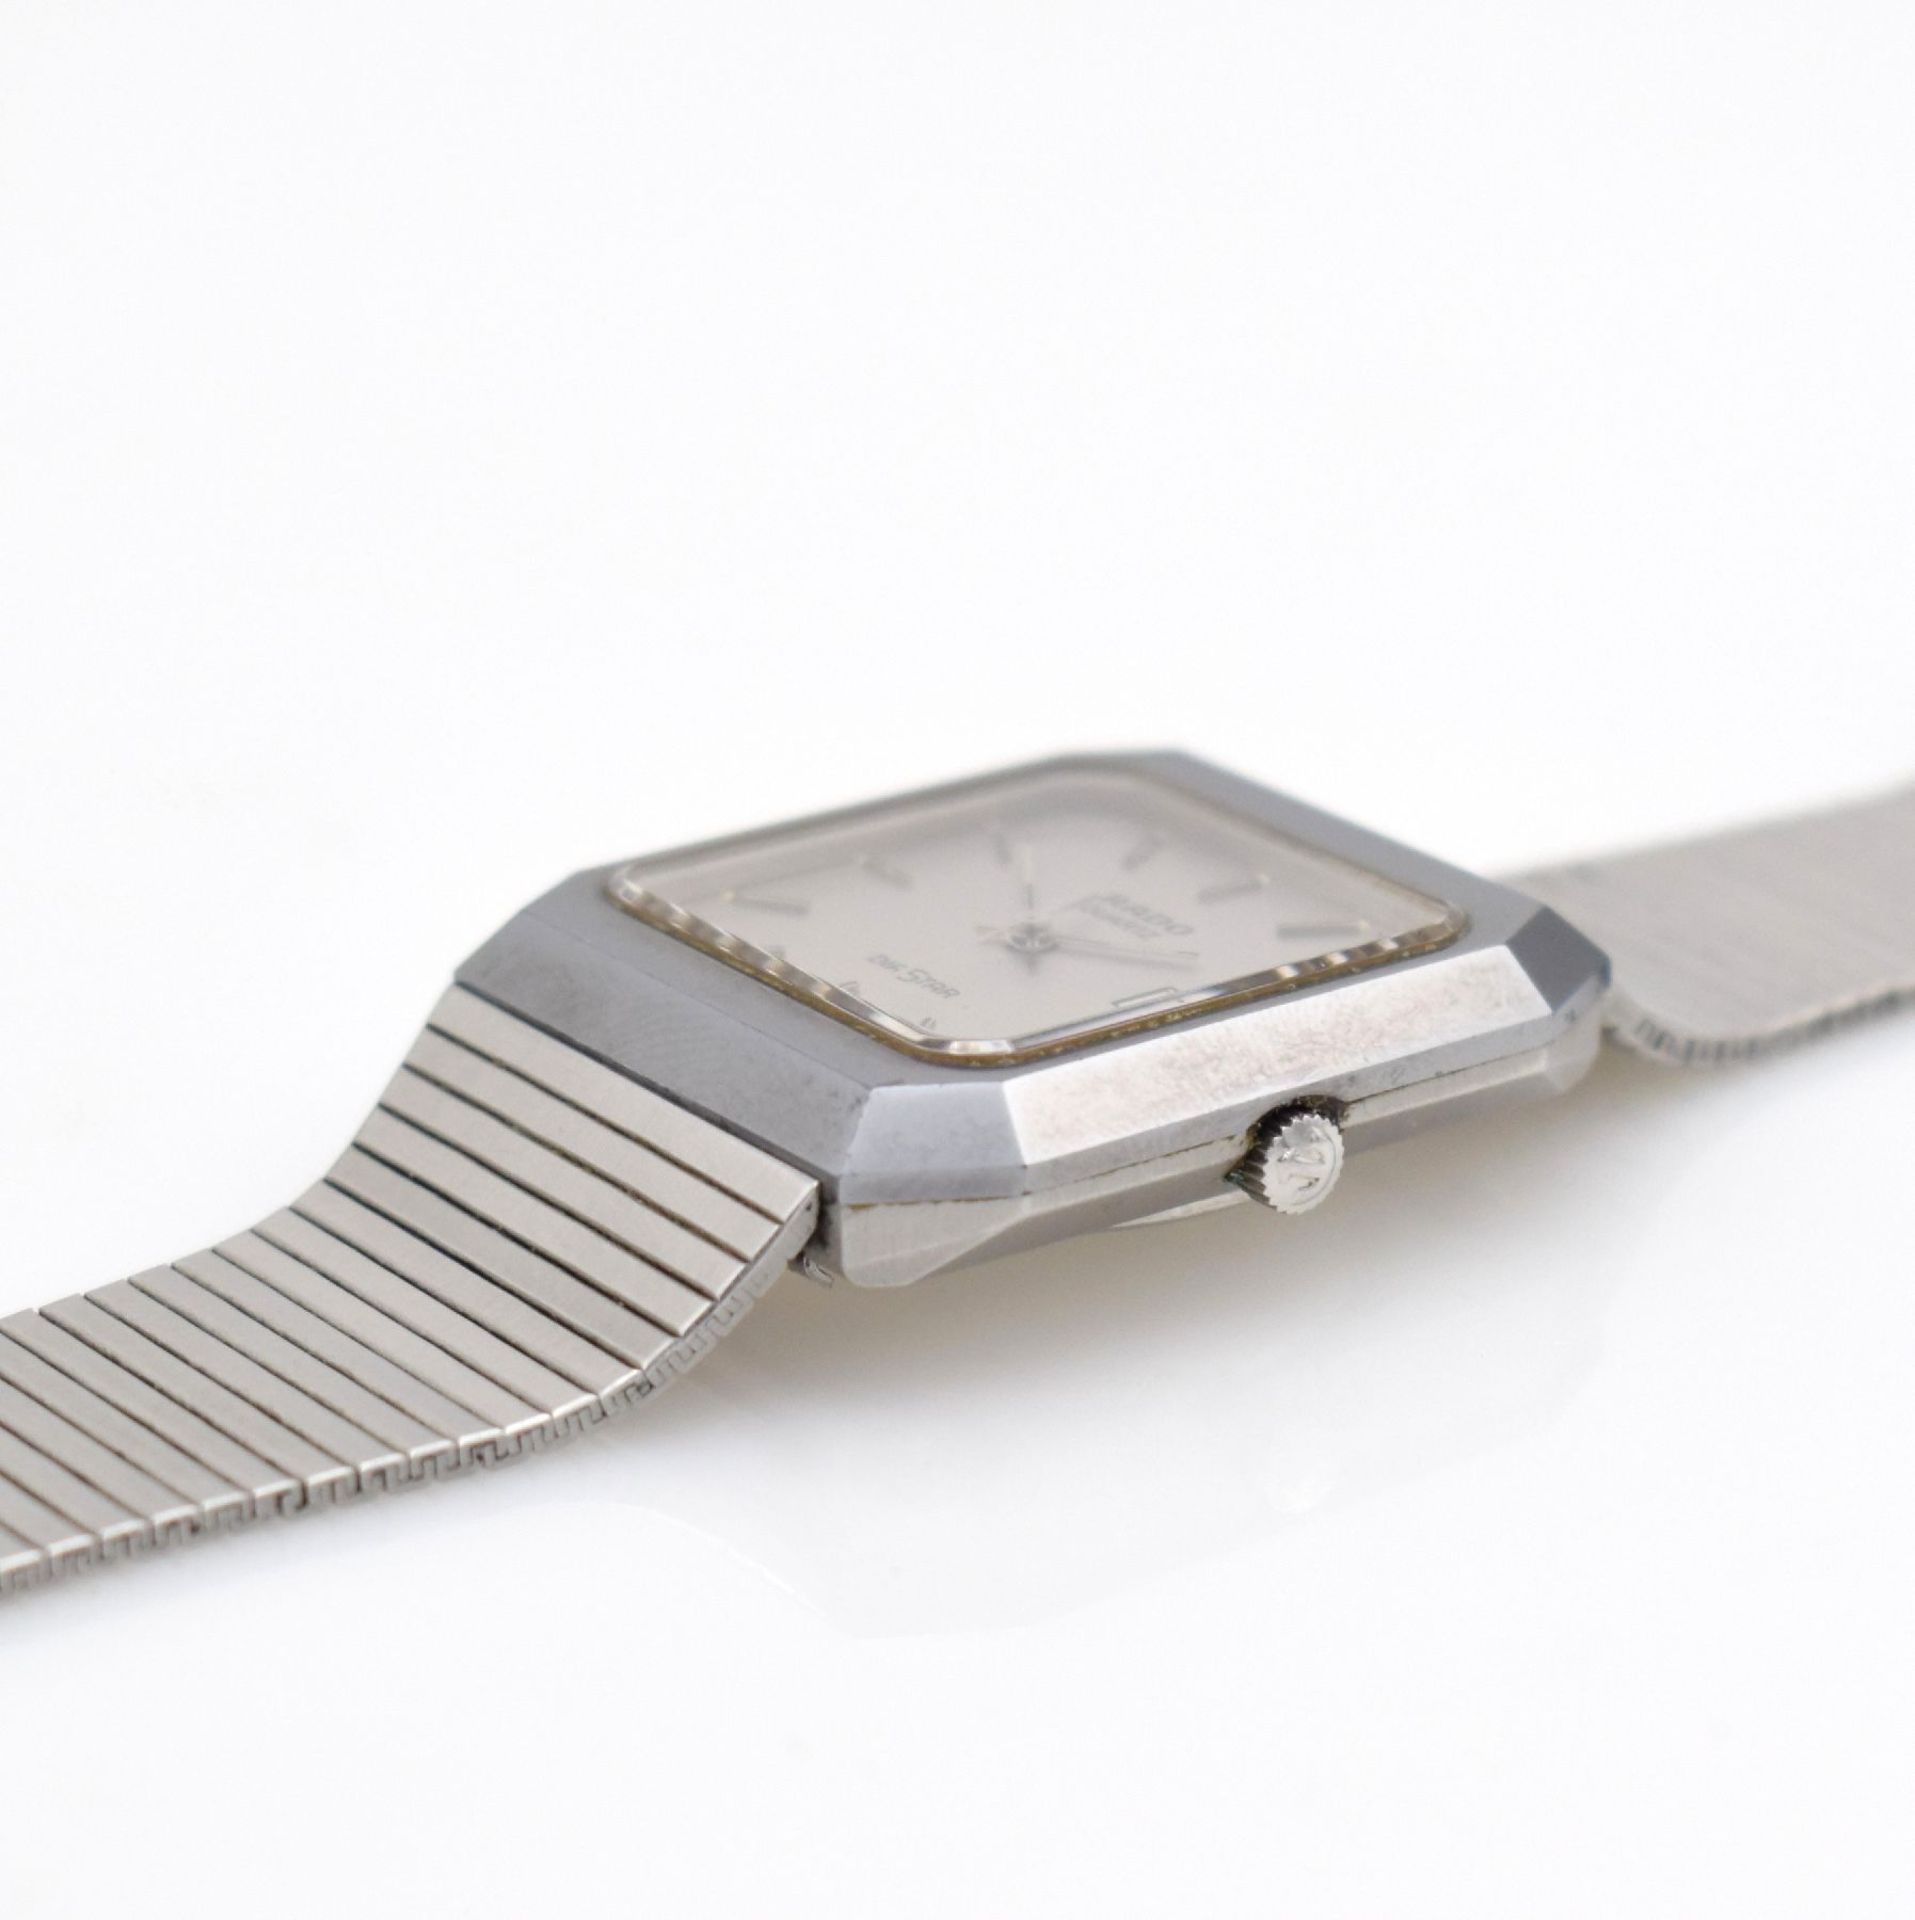 RADO Diastar Armbanduhr in Stahl/Stahlband, Schweiz um 1980, quarz, gedr. Stahlgeh. m. kratz- - Bild 6 aus 7